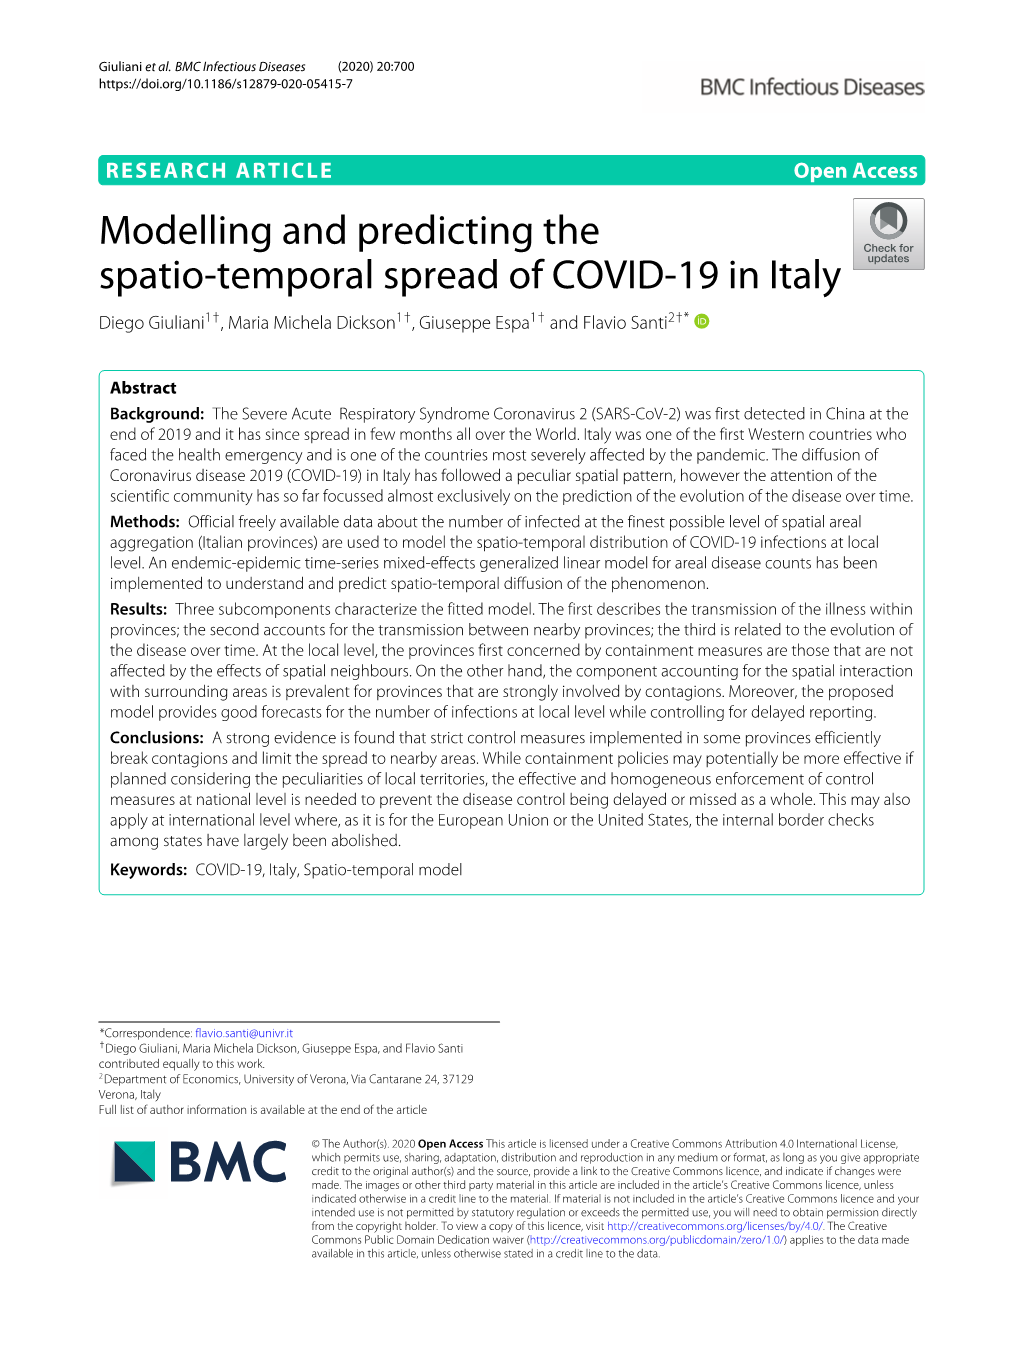 Modelling and Predicting the Spatio-Temporal Spread of COVID-19 in Italy Diego Giuliani1†, Maria Michela Dickson1†, Giuseppe Espa1† and Flavio Santi2†*